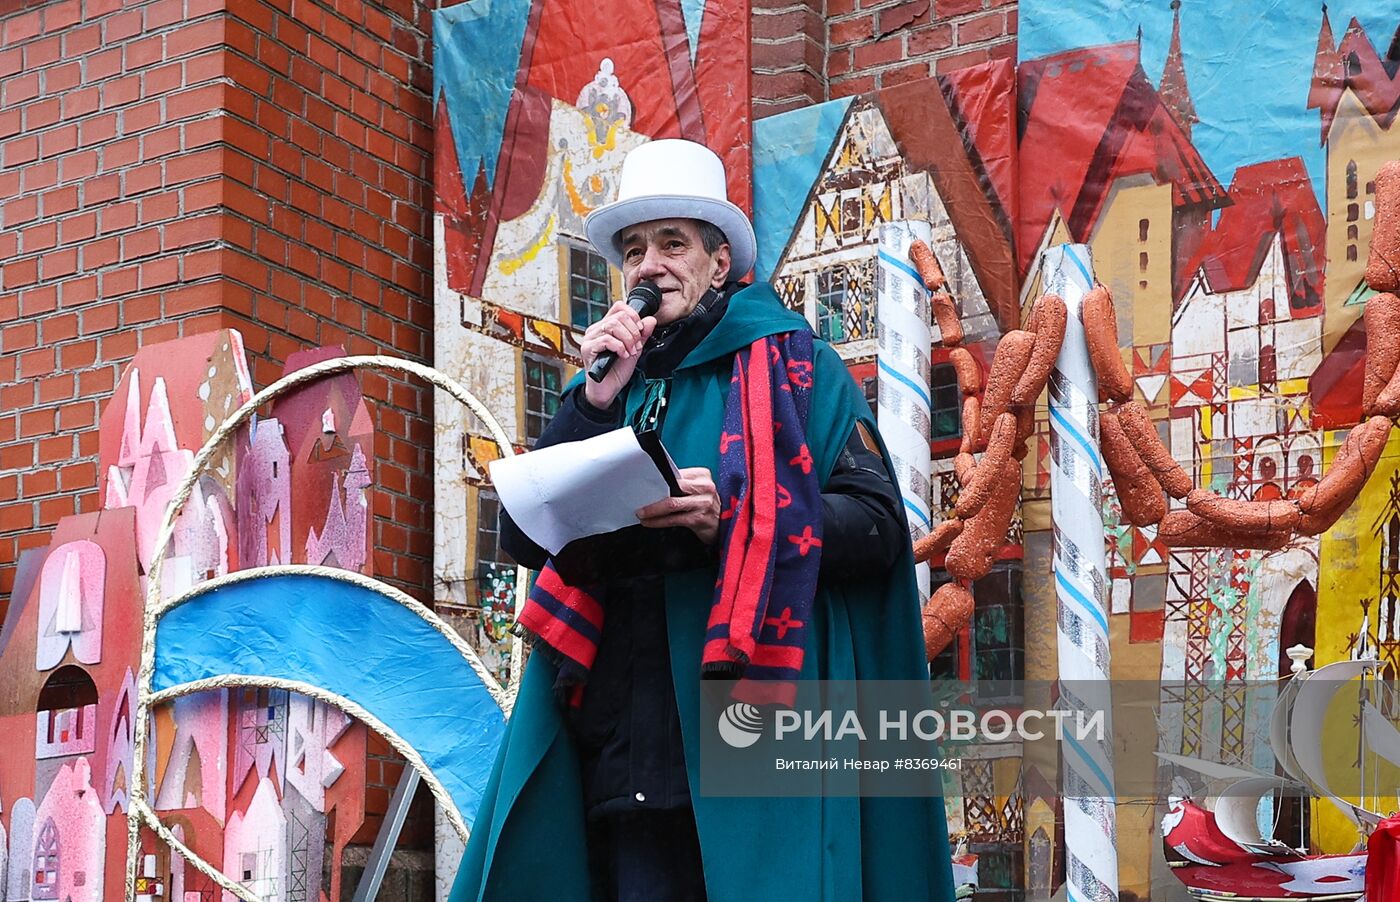 Праздник длинной колбасы в Калининграде